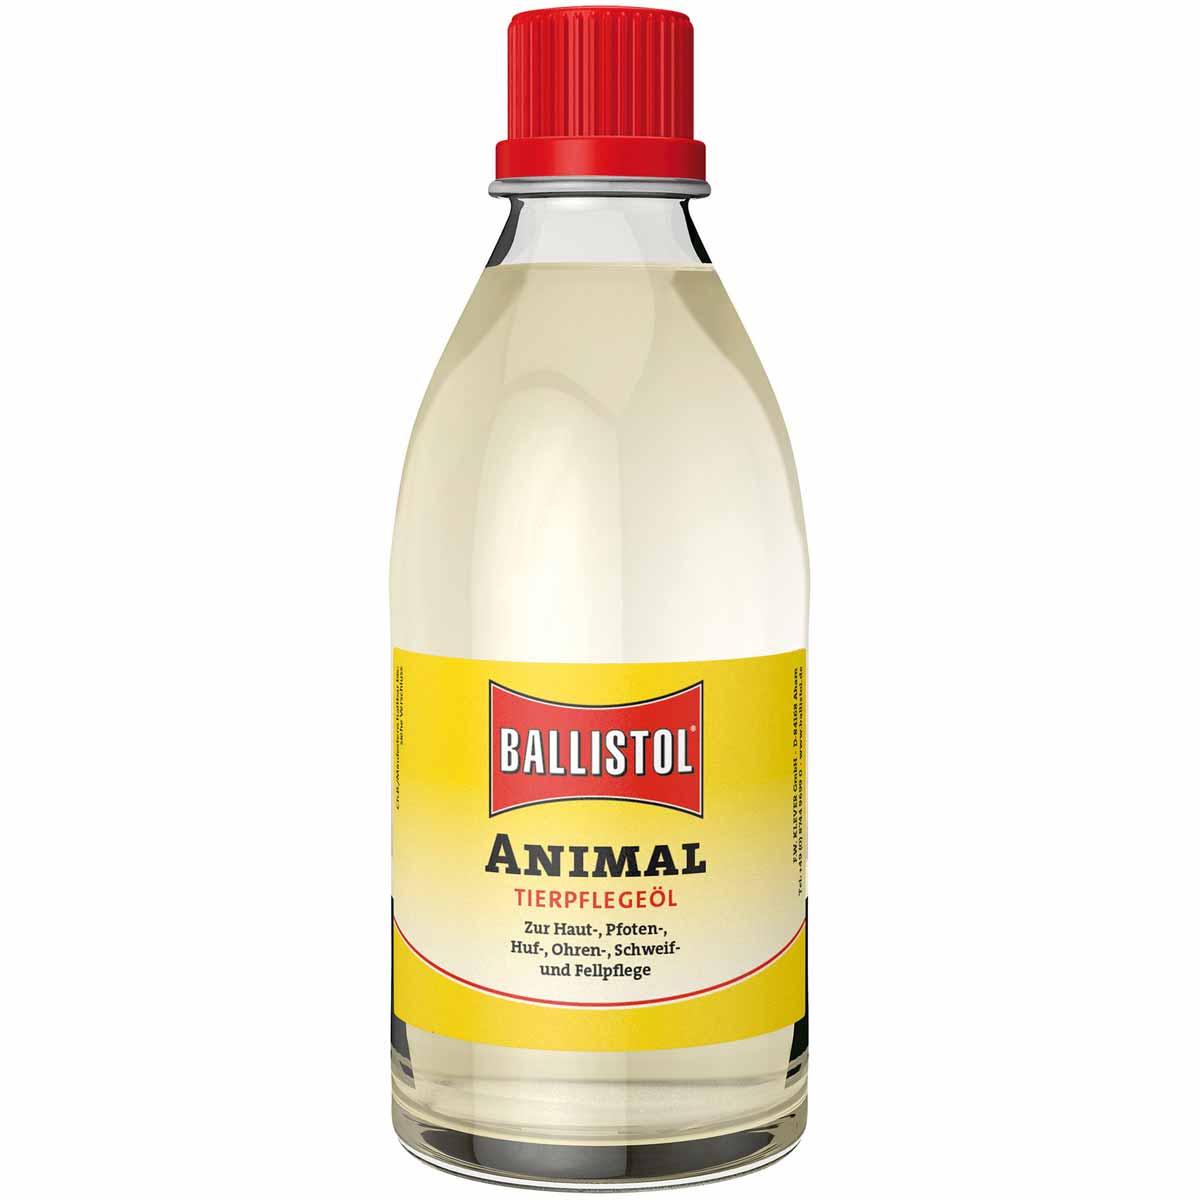 BALLISTOL Animal Tierpflege-Öl 100 ml